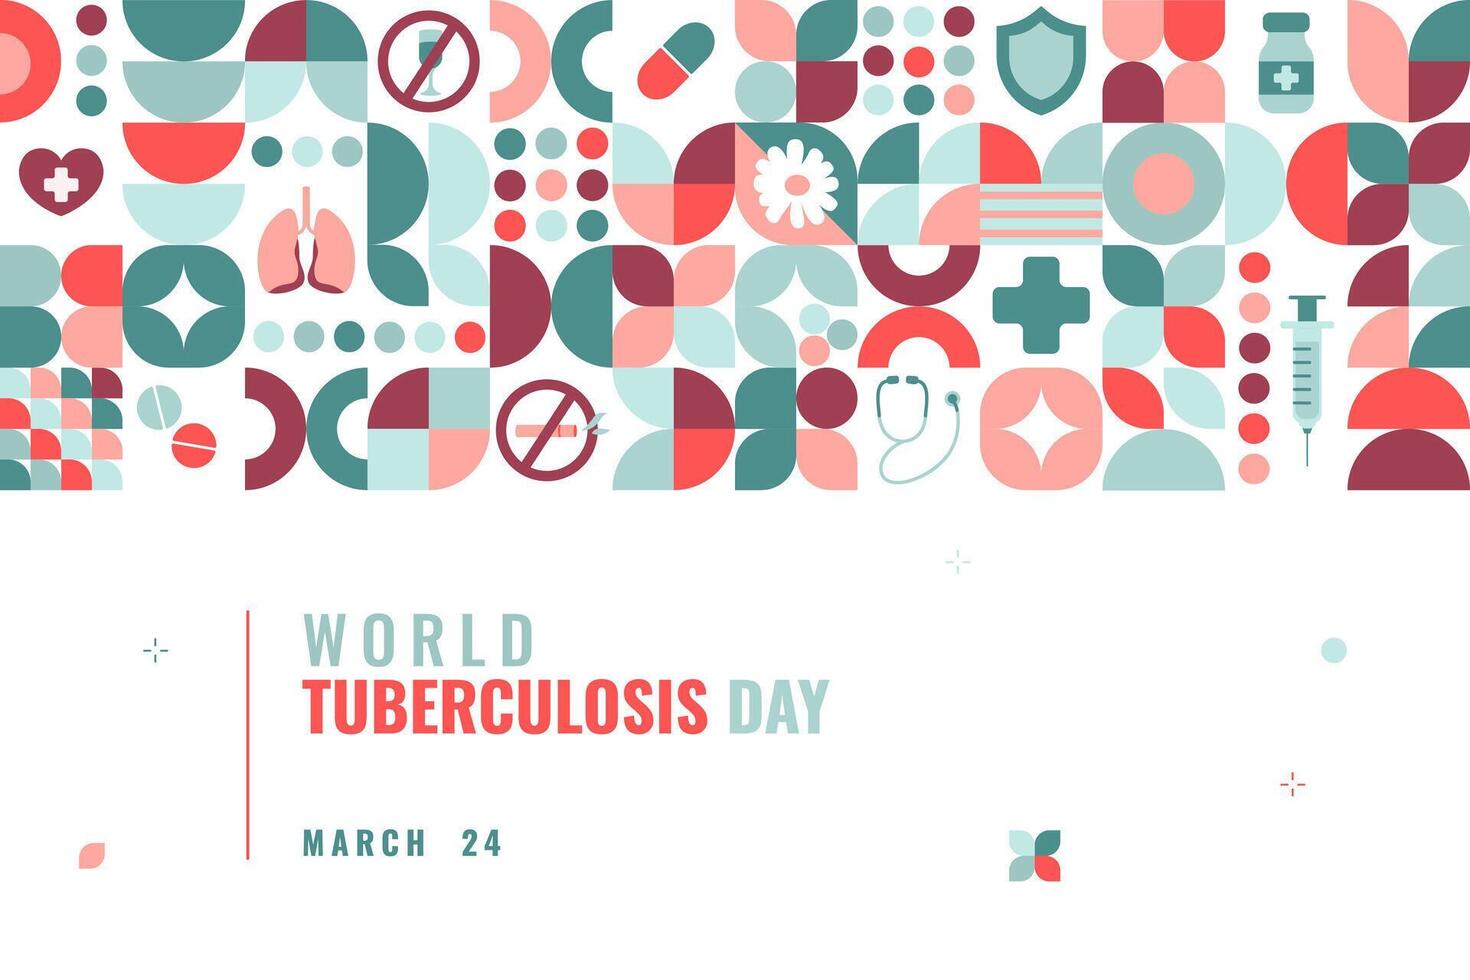 värld tuberkulos dag affisch med geometrisk element och tematiska symboler. mall för kort, baner, affisch, bakgrund. händelse för sjukdom medvetenhet. vektor